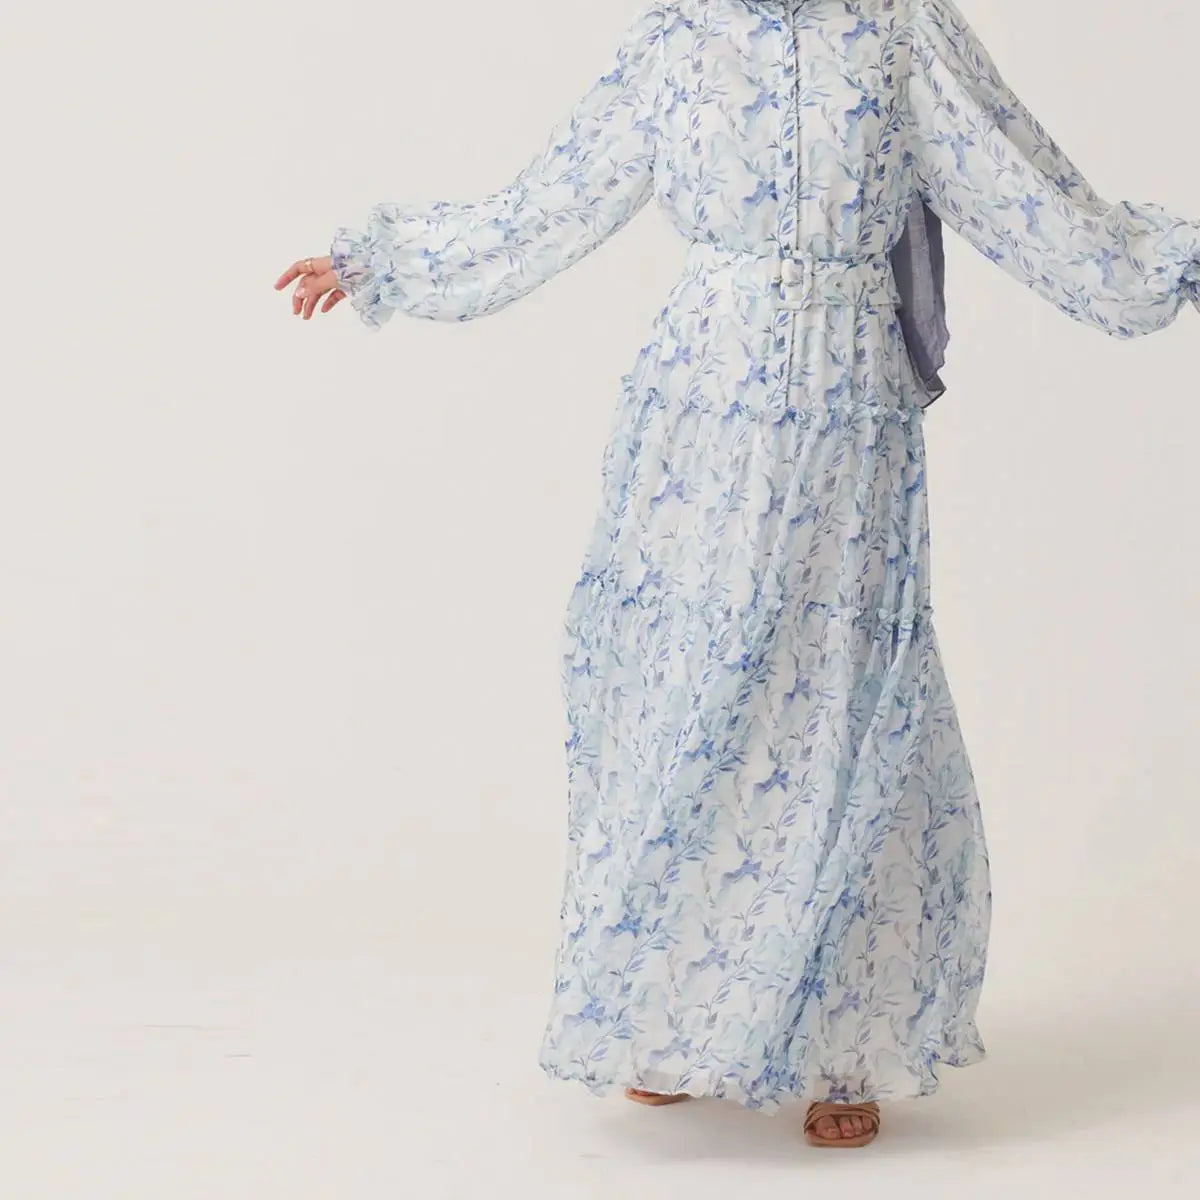 Muslim Women Chiffon Printed Abaya Dress